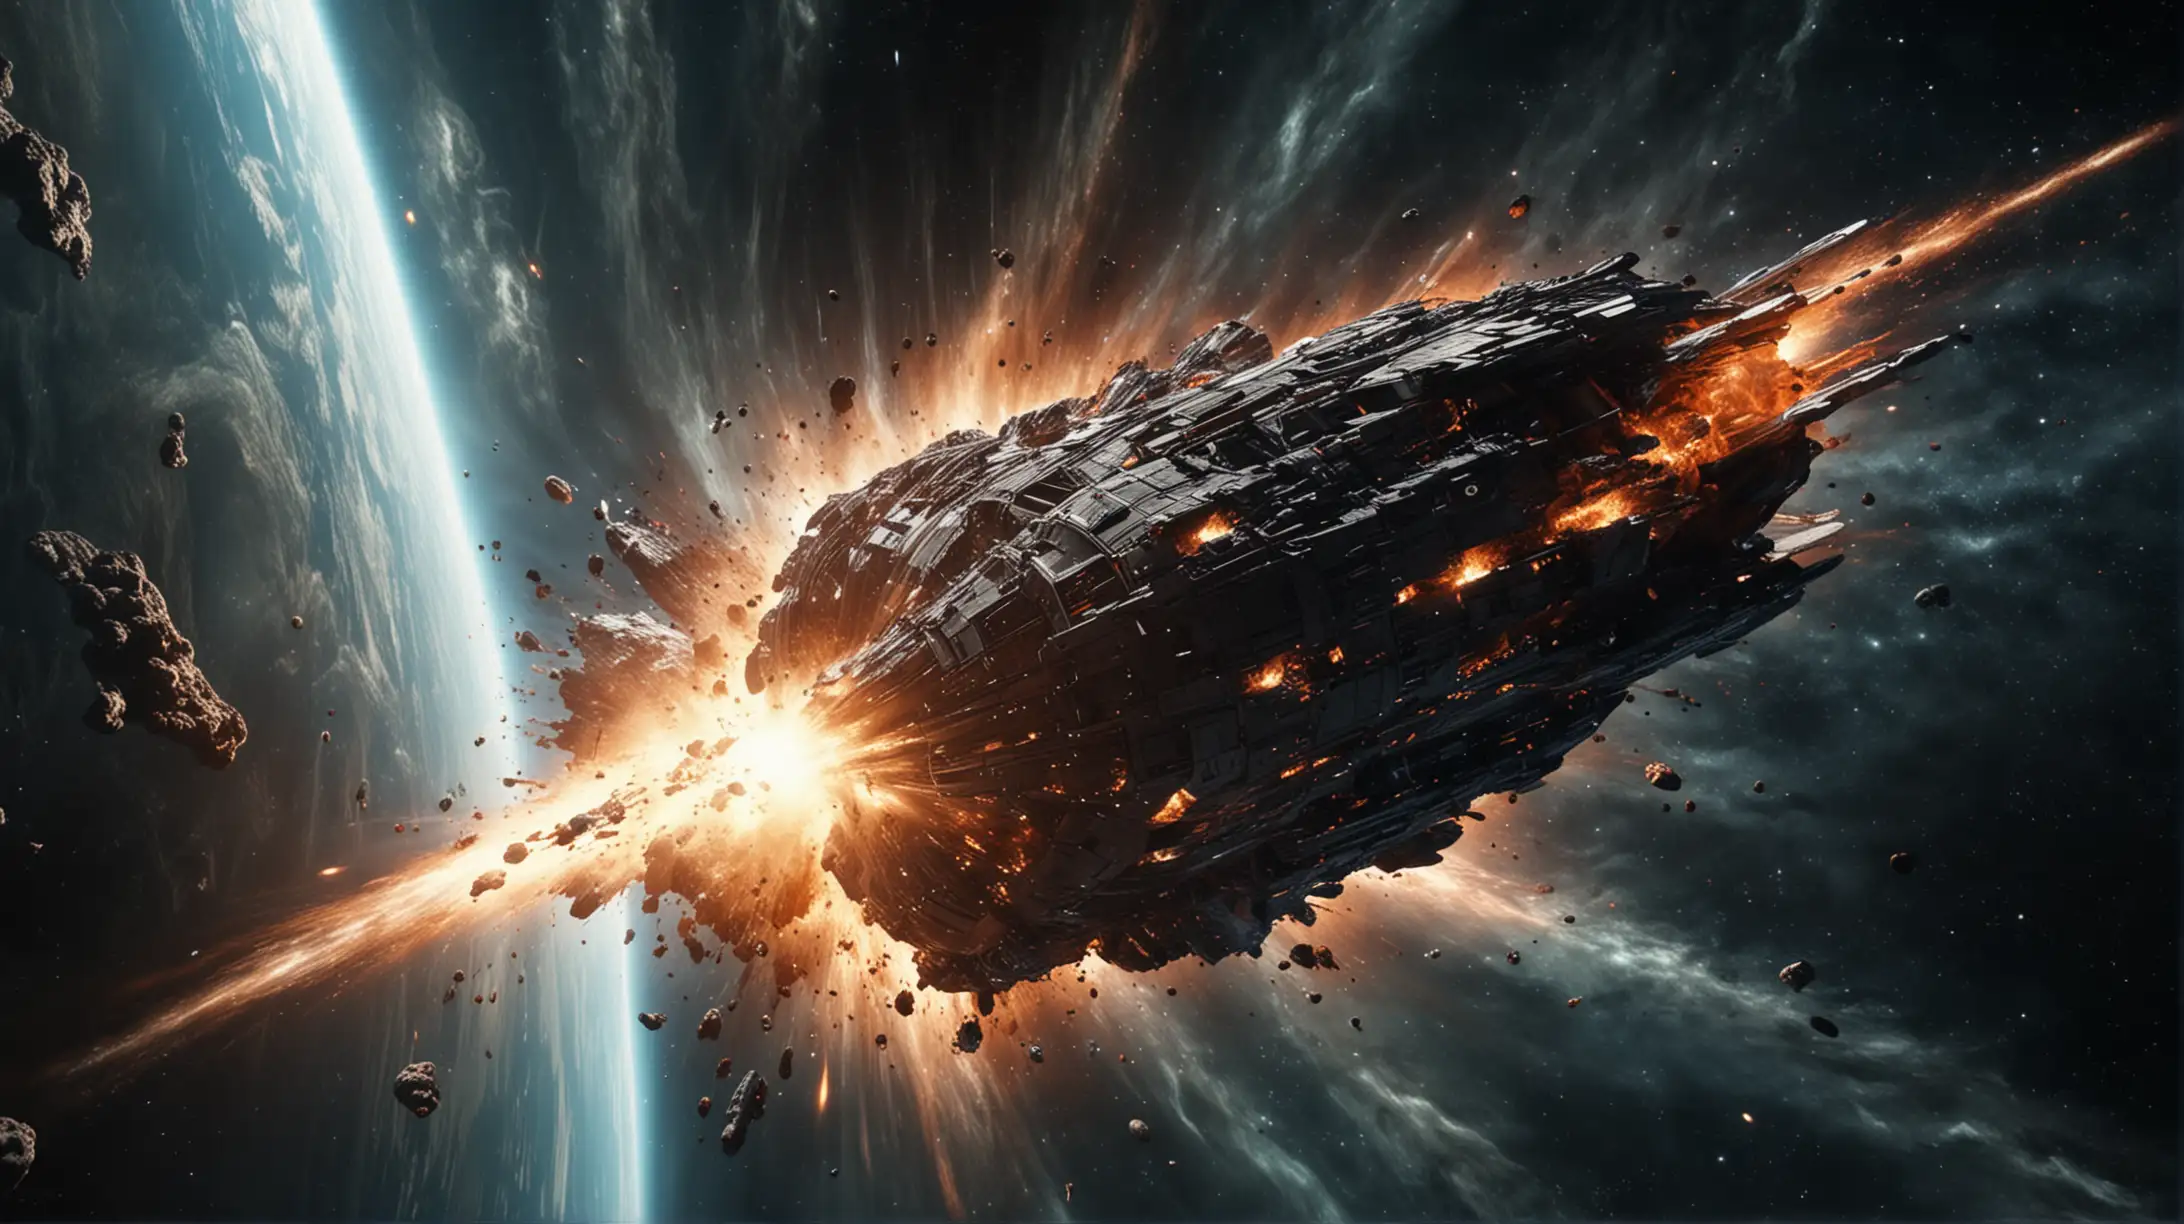 Explosive Destruction of a Grand Interstellar Spaceship in Deep Space